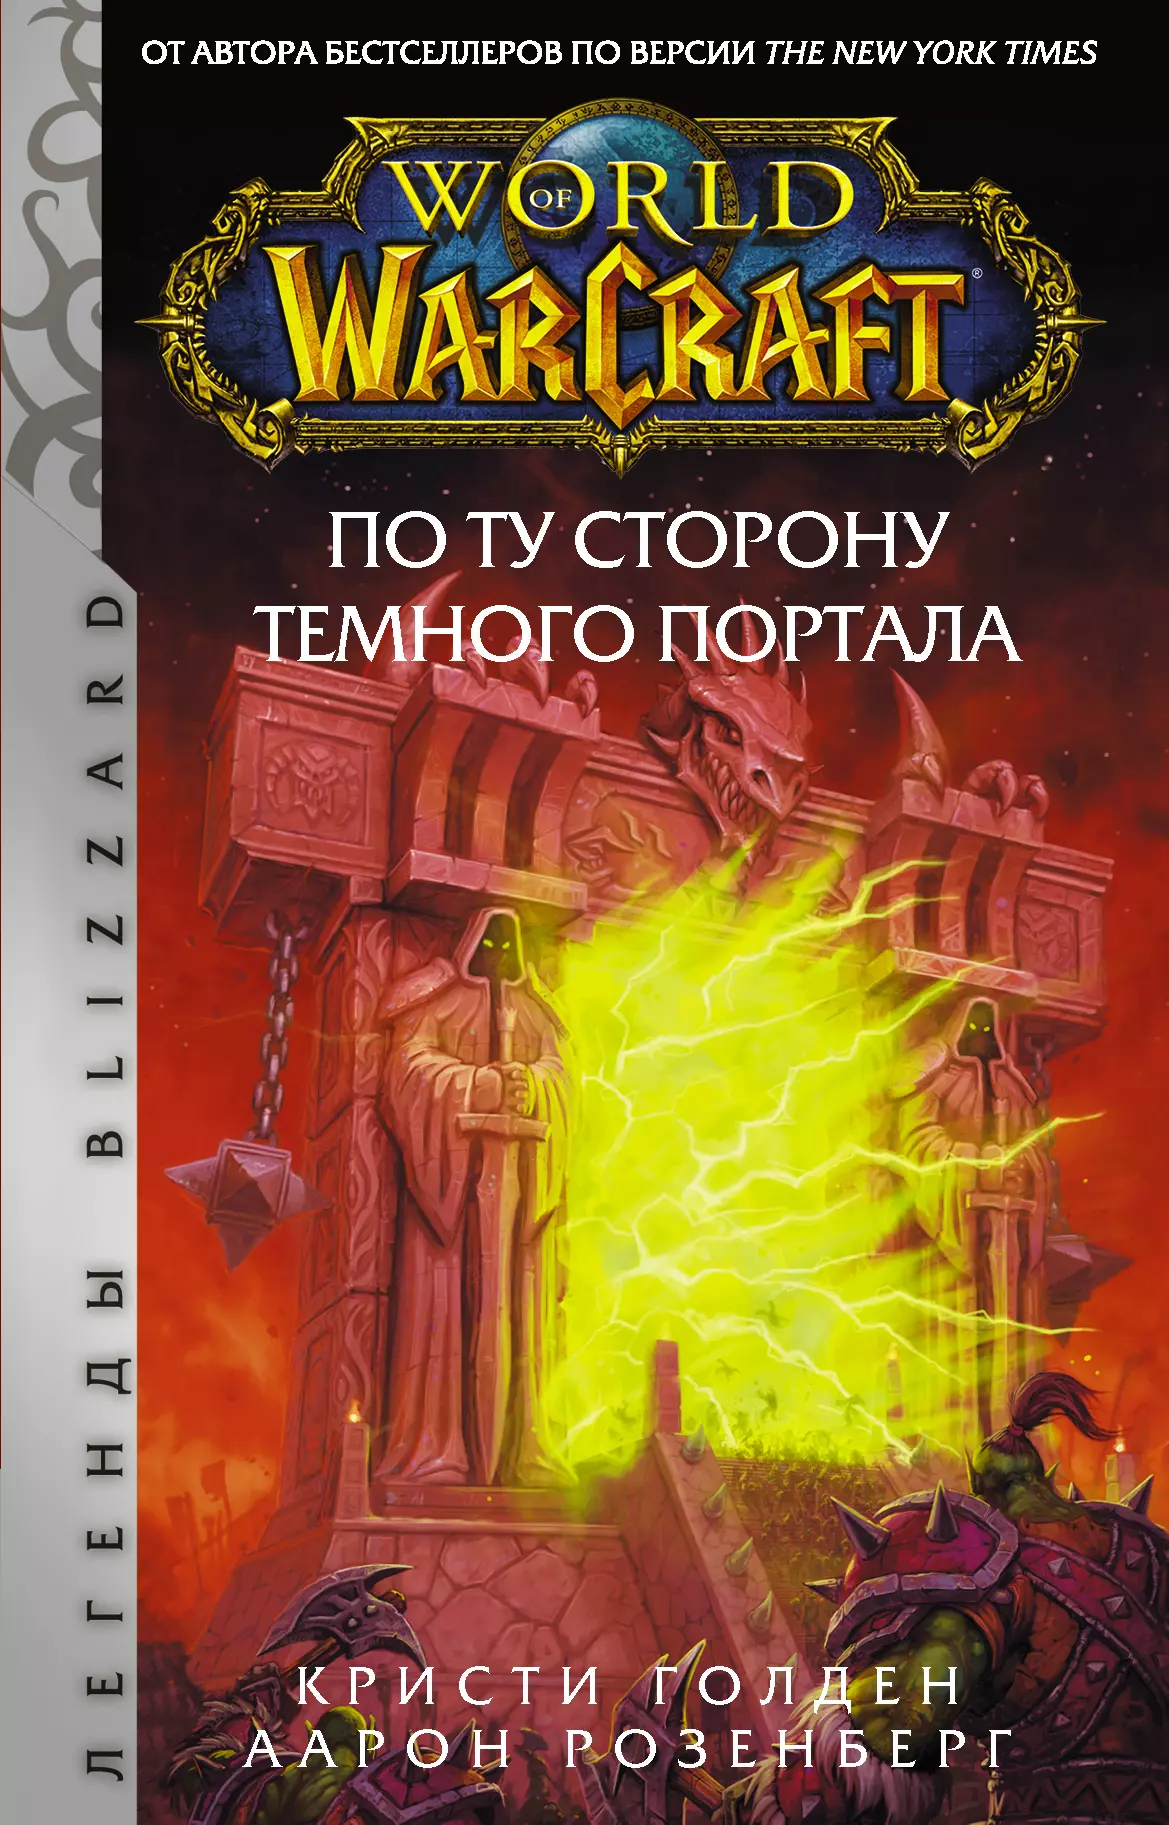 Розенберг Альфред - World of Warcraft. По ту сторону Темного портала